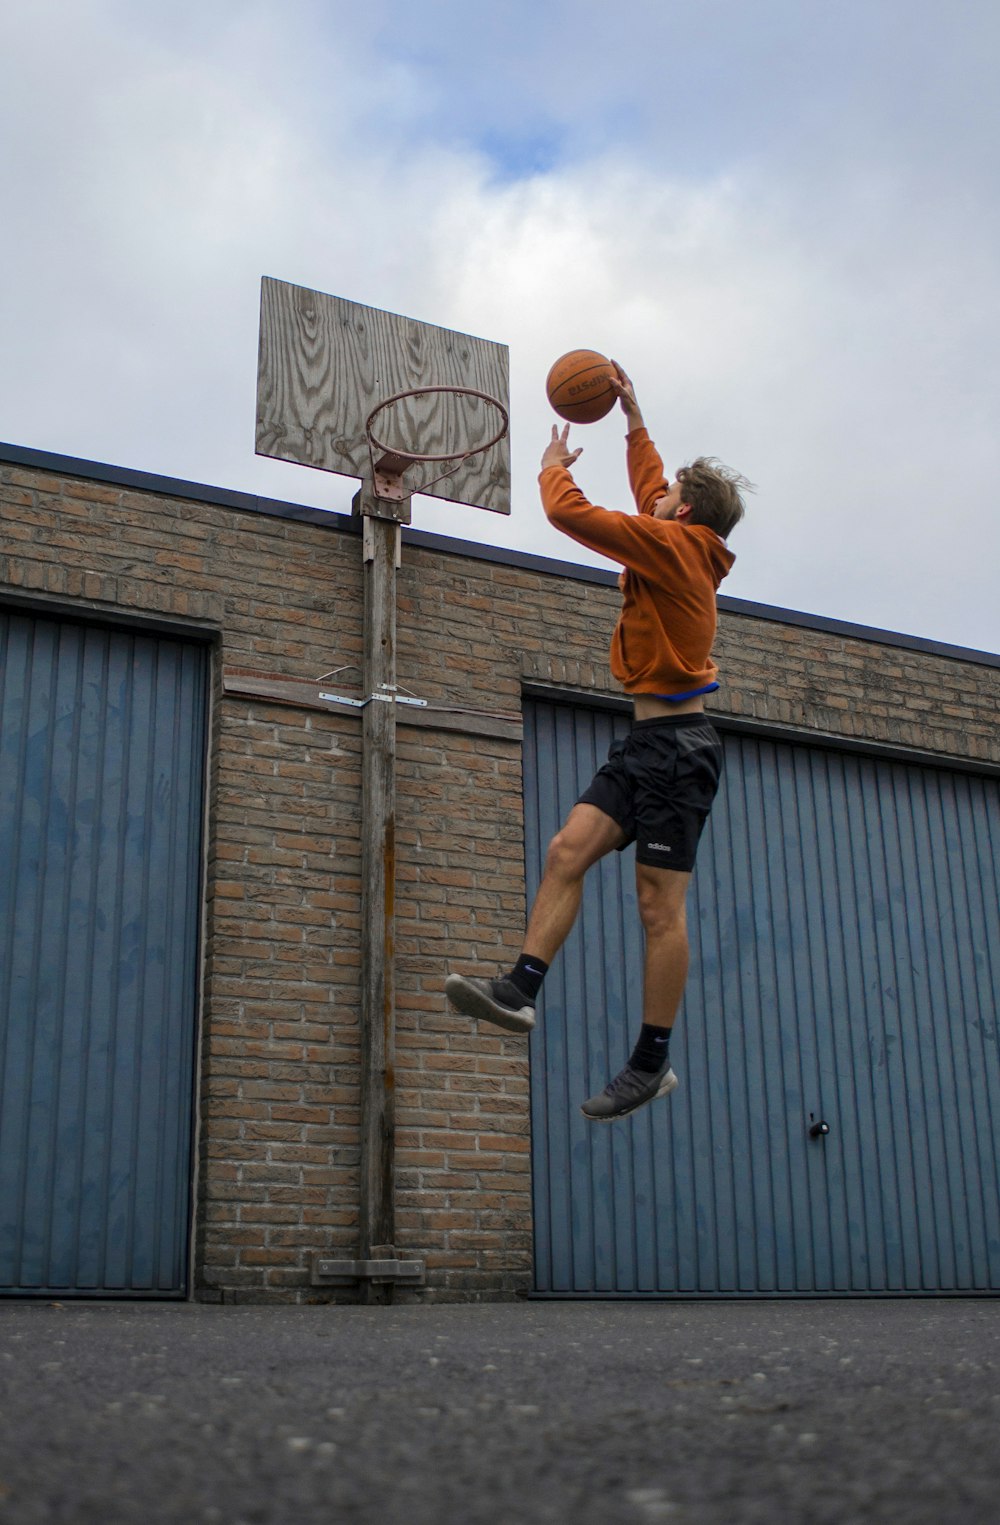 주황색 셔츠와 검은색 반바지를 입고 농구를 하는 남자